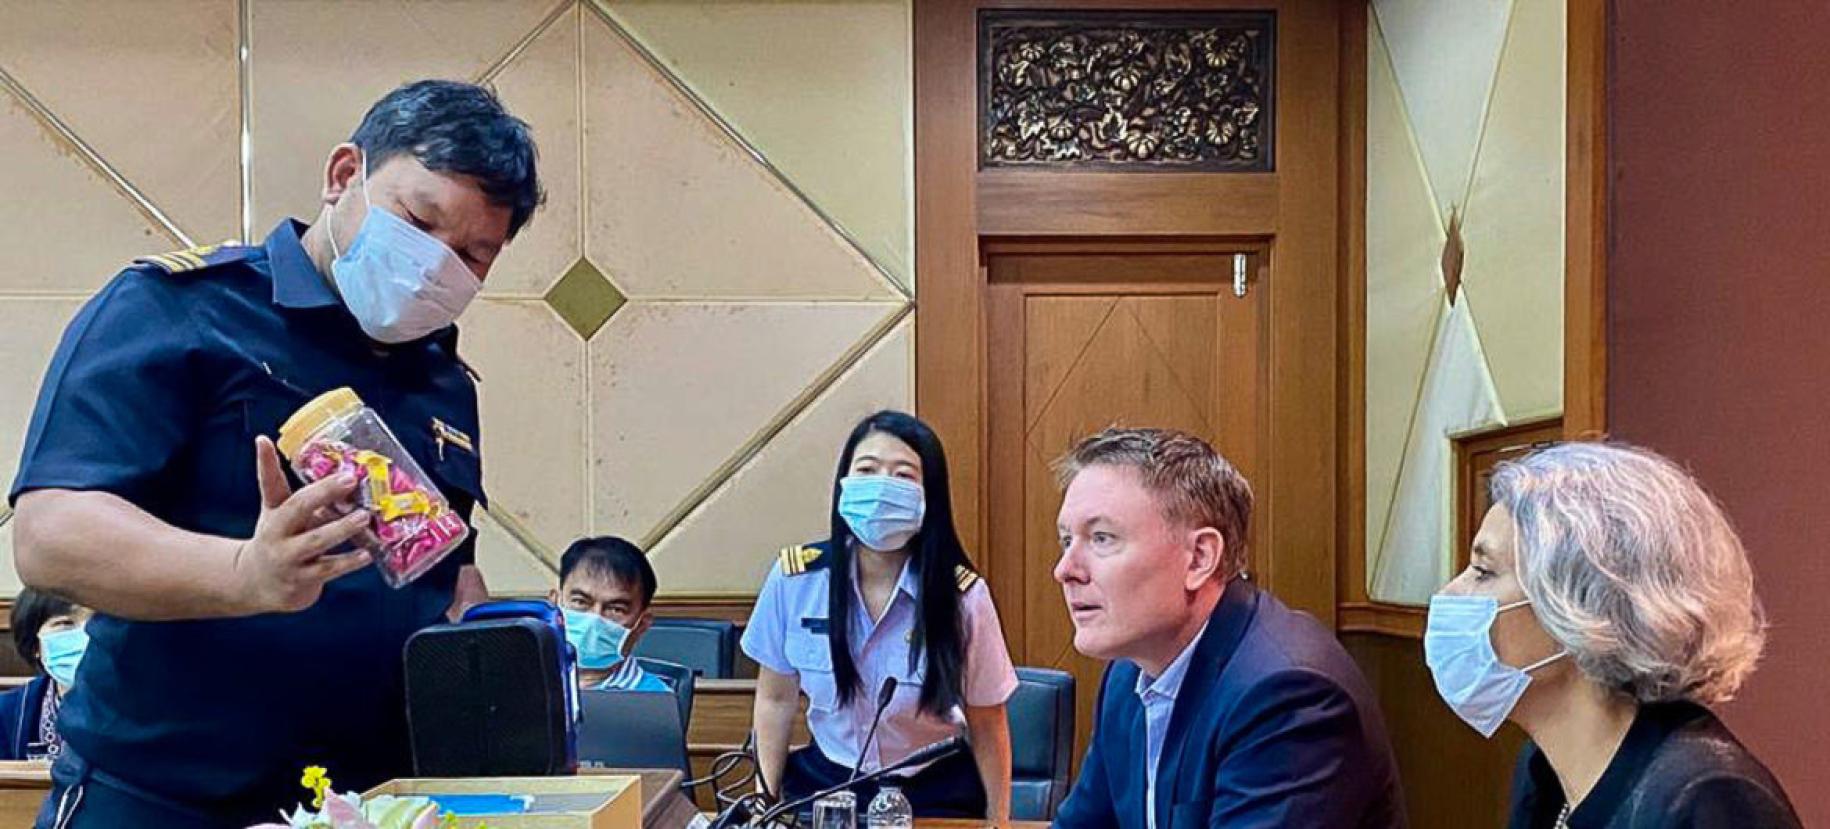 المنسقة المقيمة للأمم المتحدة في تايلاند غيتا سابهاروال (إلى اليمين) وجيريمي دوغلاس من مكتب الأمم المتحدة المعني بالمخدرات والجريمة (في الوسط) خلال إحاطة في غرفة الجمارك في ماي ساي في شمال البلاد.